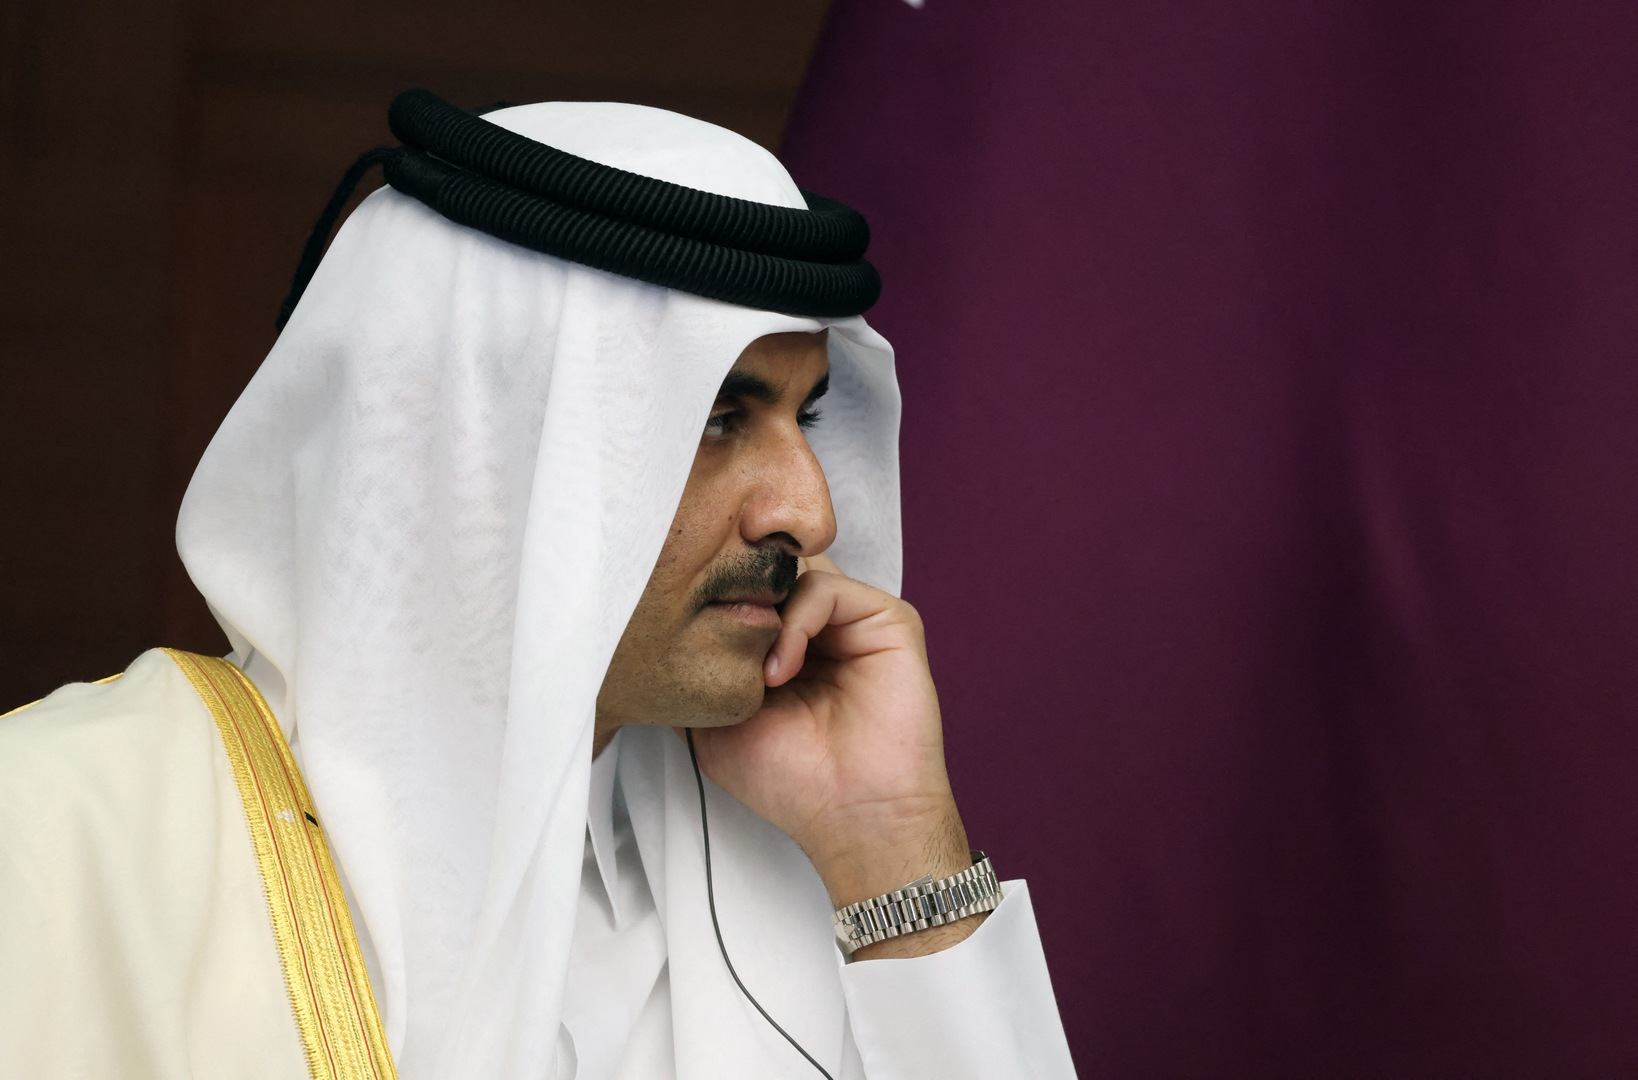 ظهور لافت لأمير قطر رفقة والده في جولة خاصة يثير تفاعلا بمواقع التواصل (صور+فيديو)